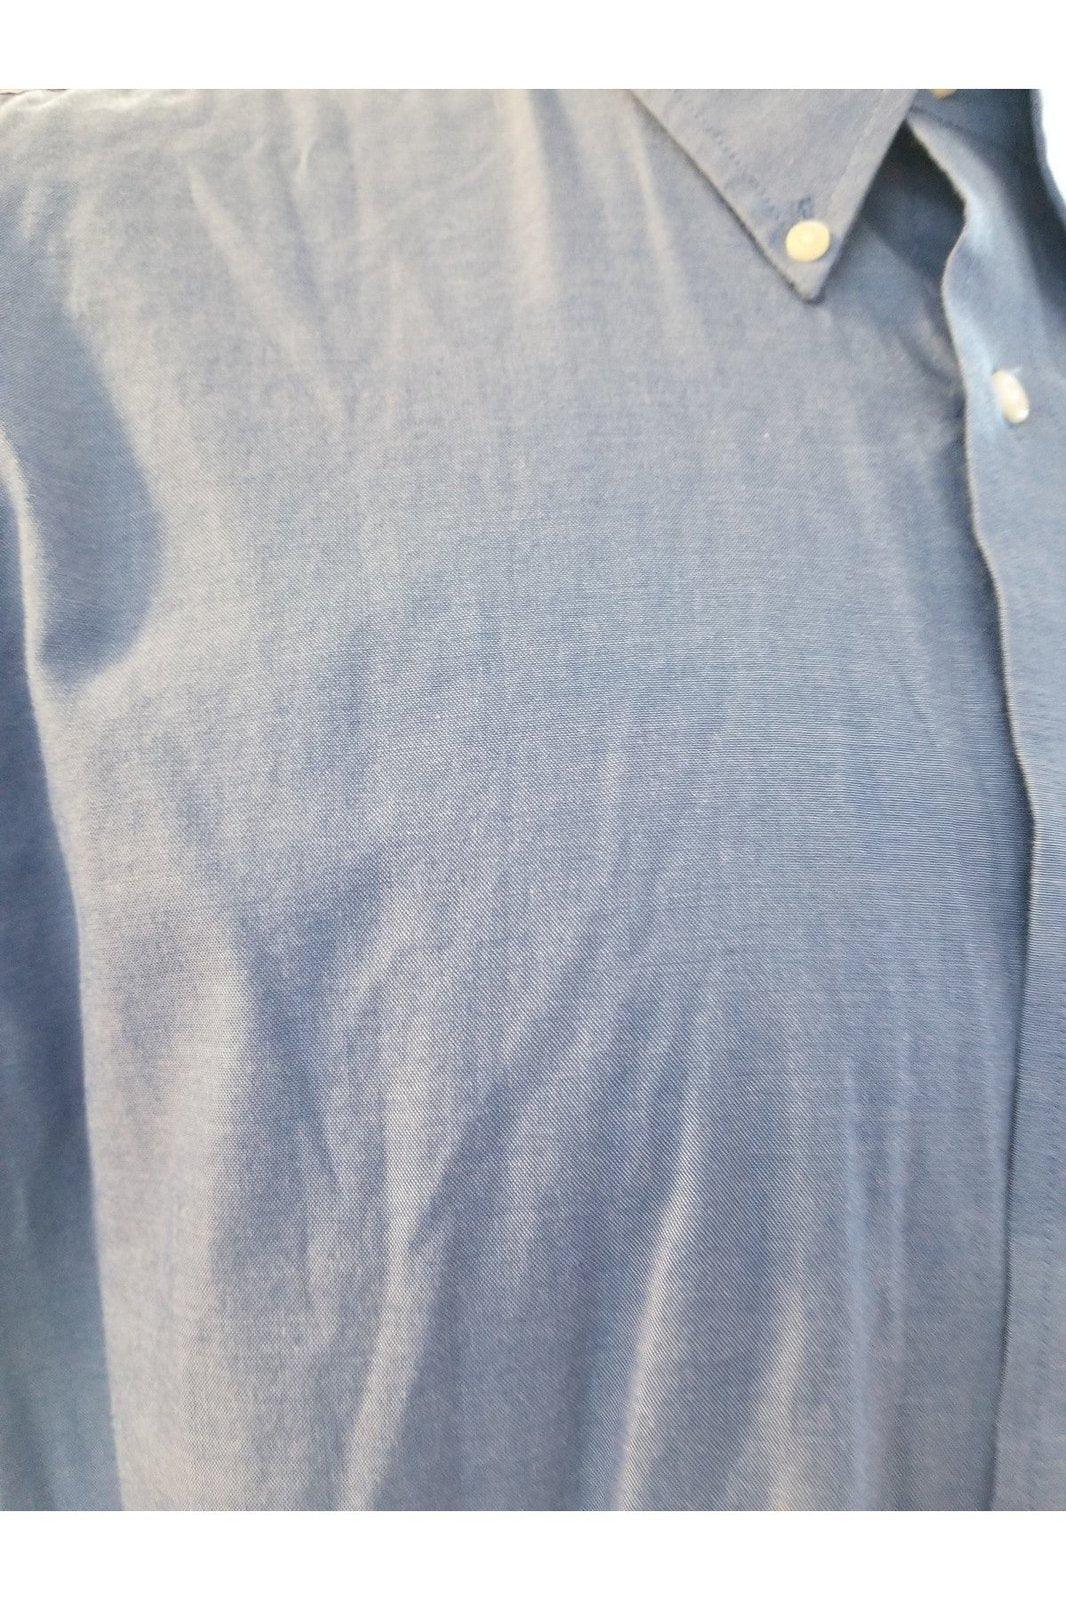  Arrow blue button shirt sz 16.5 32/33